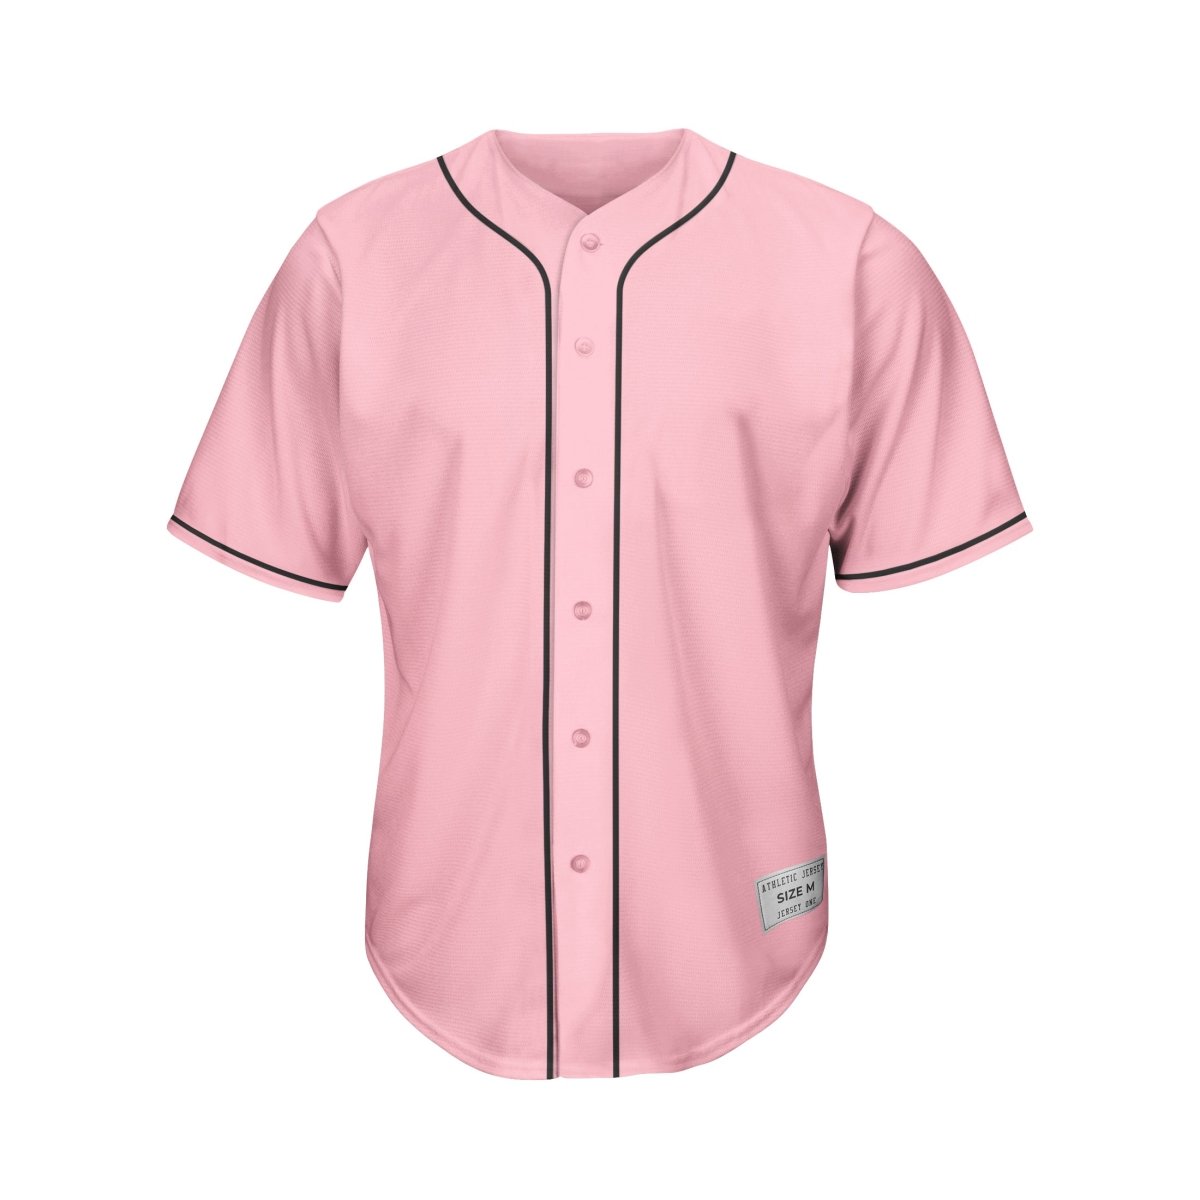 Pink Baseball Jerseys